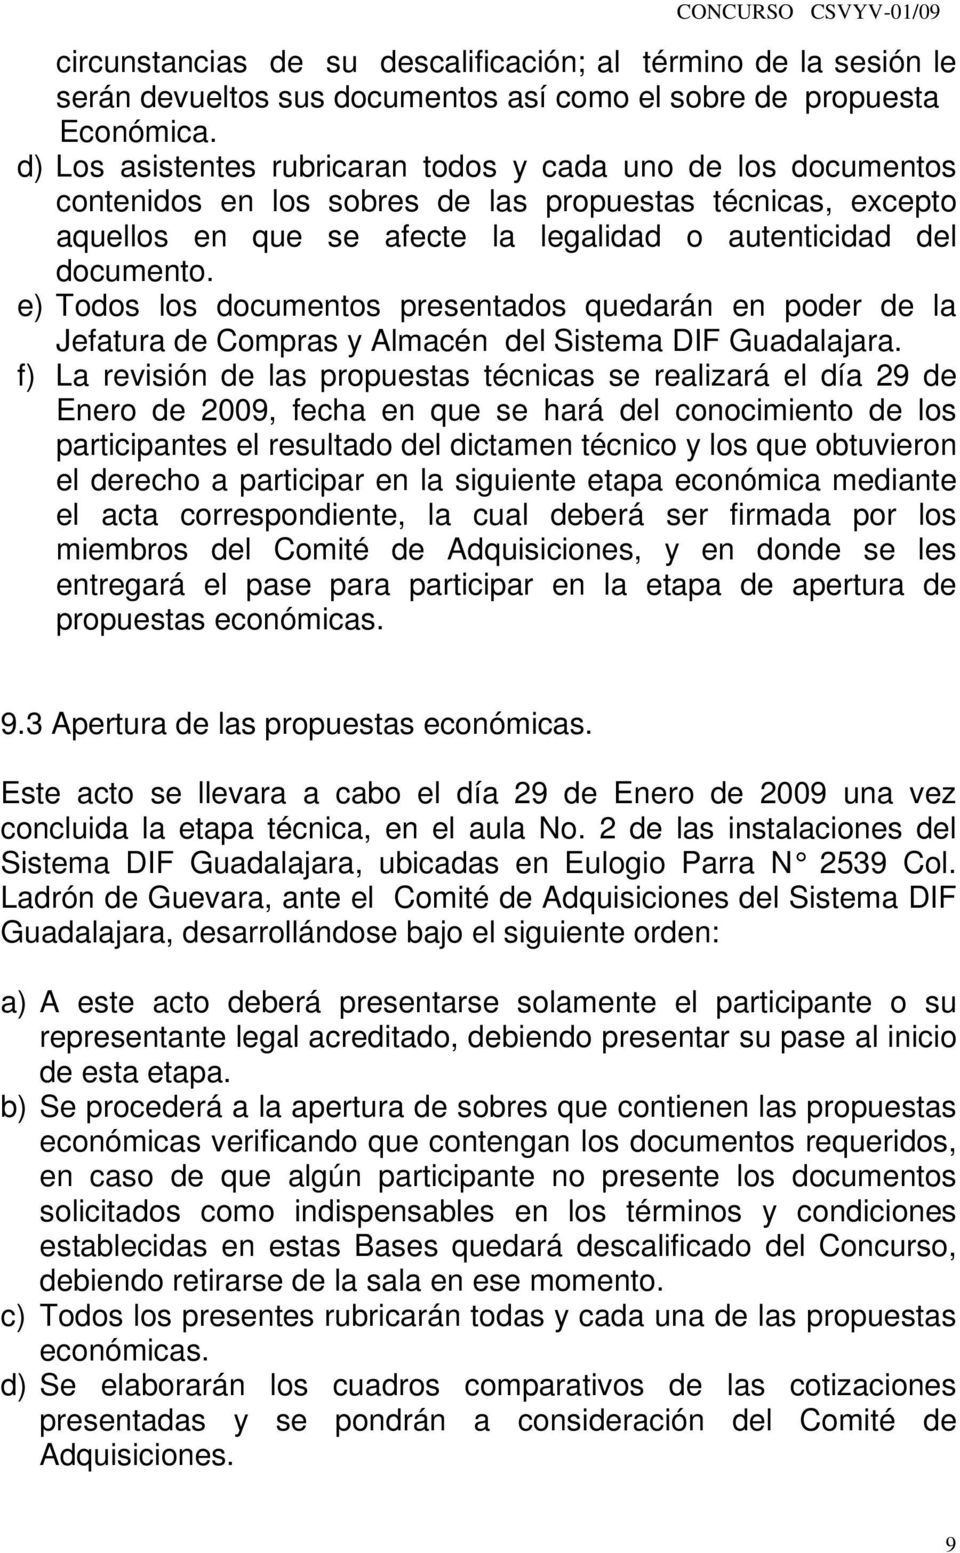 e) Todos los documentos presentados quedarán en poder de la Jefatura de Compras y Almacén del Sistema DIF Guadalajara.